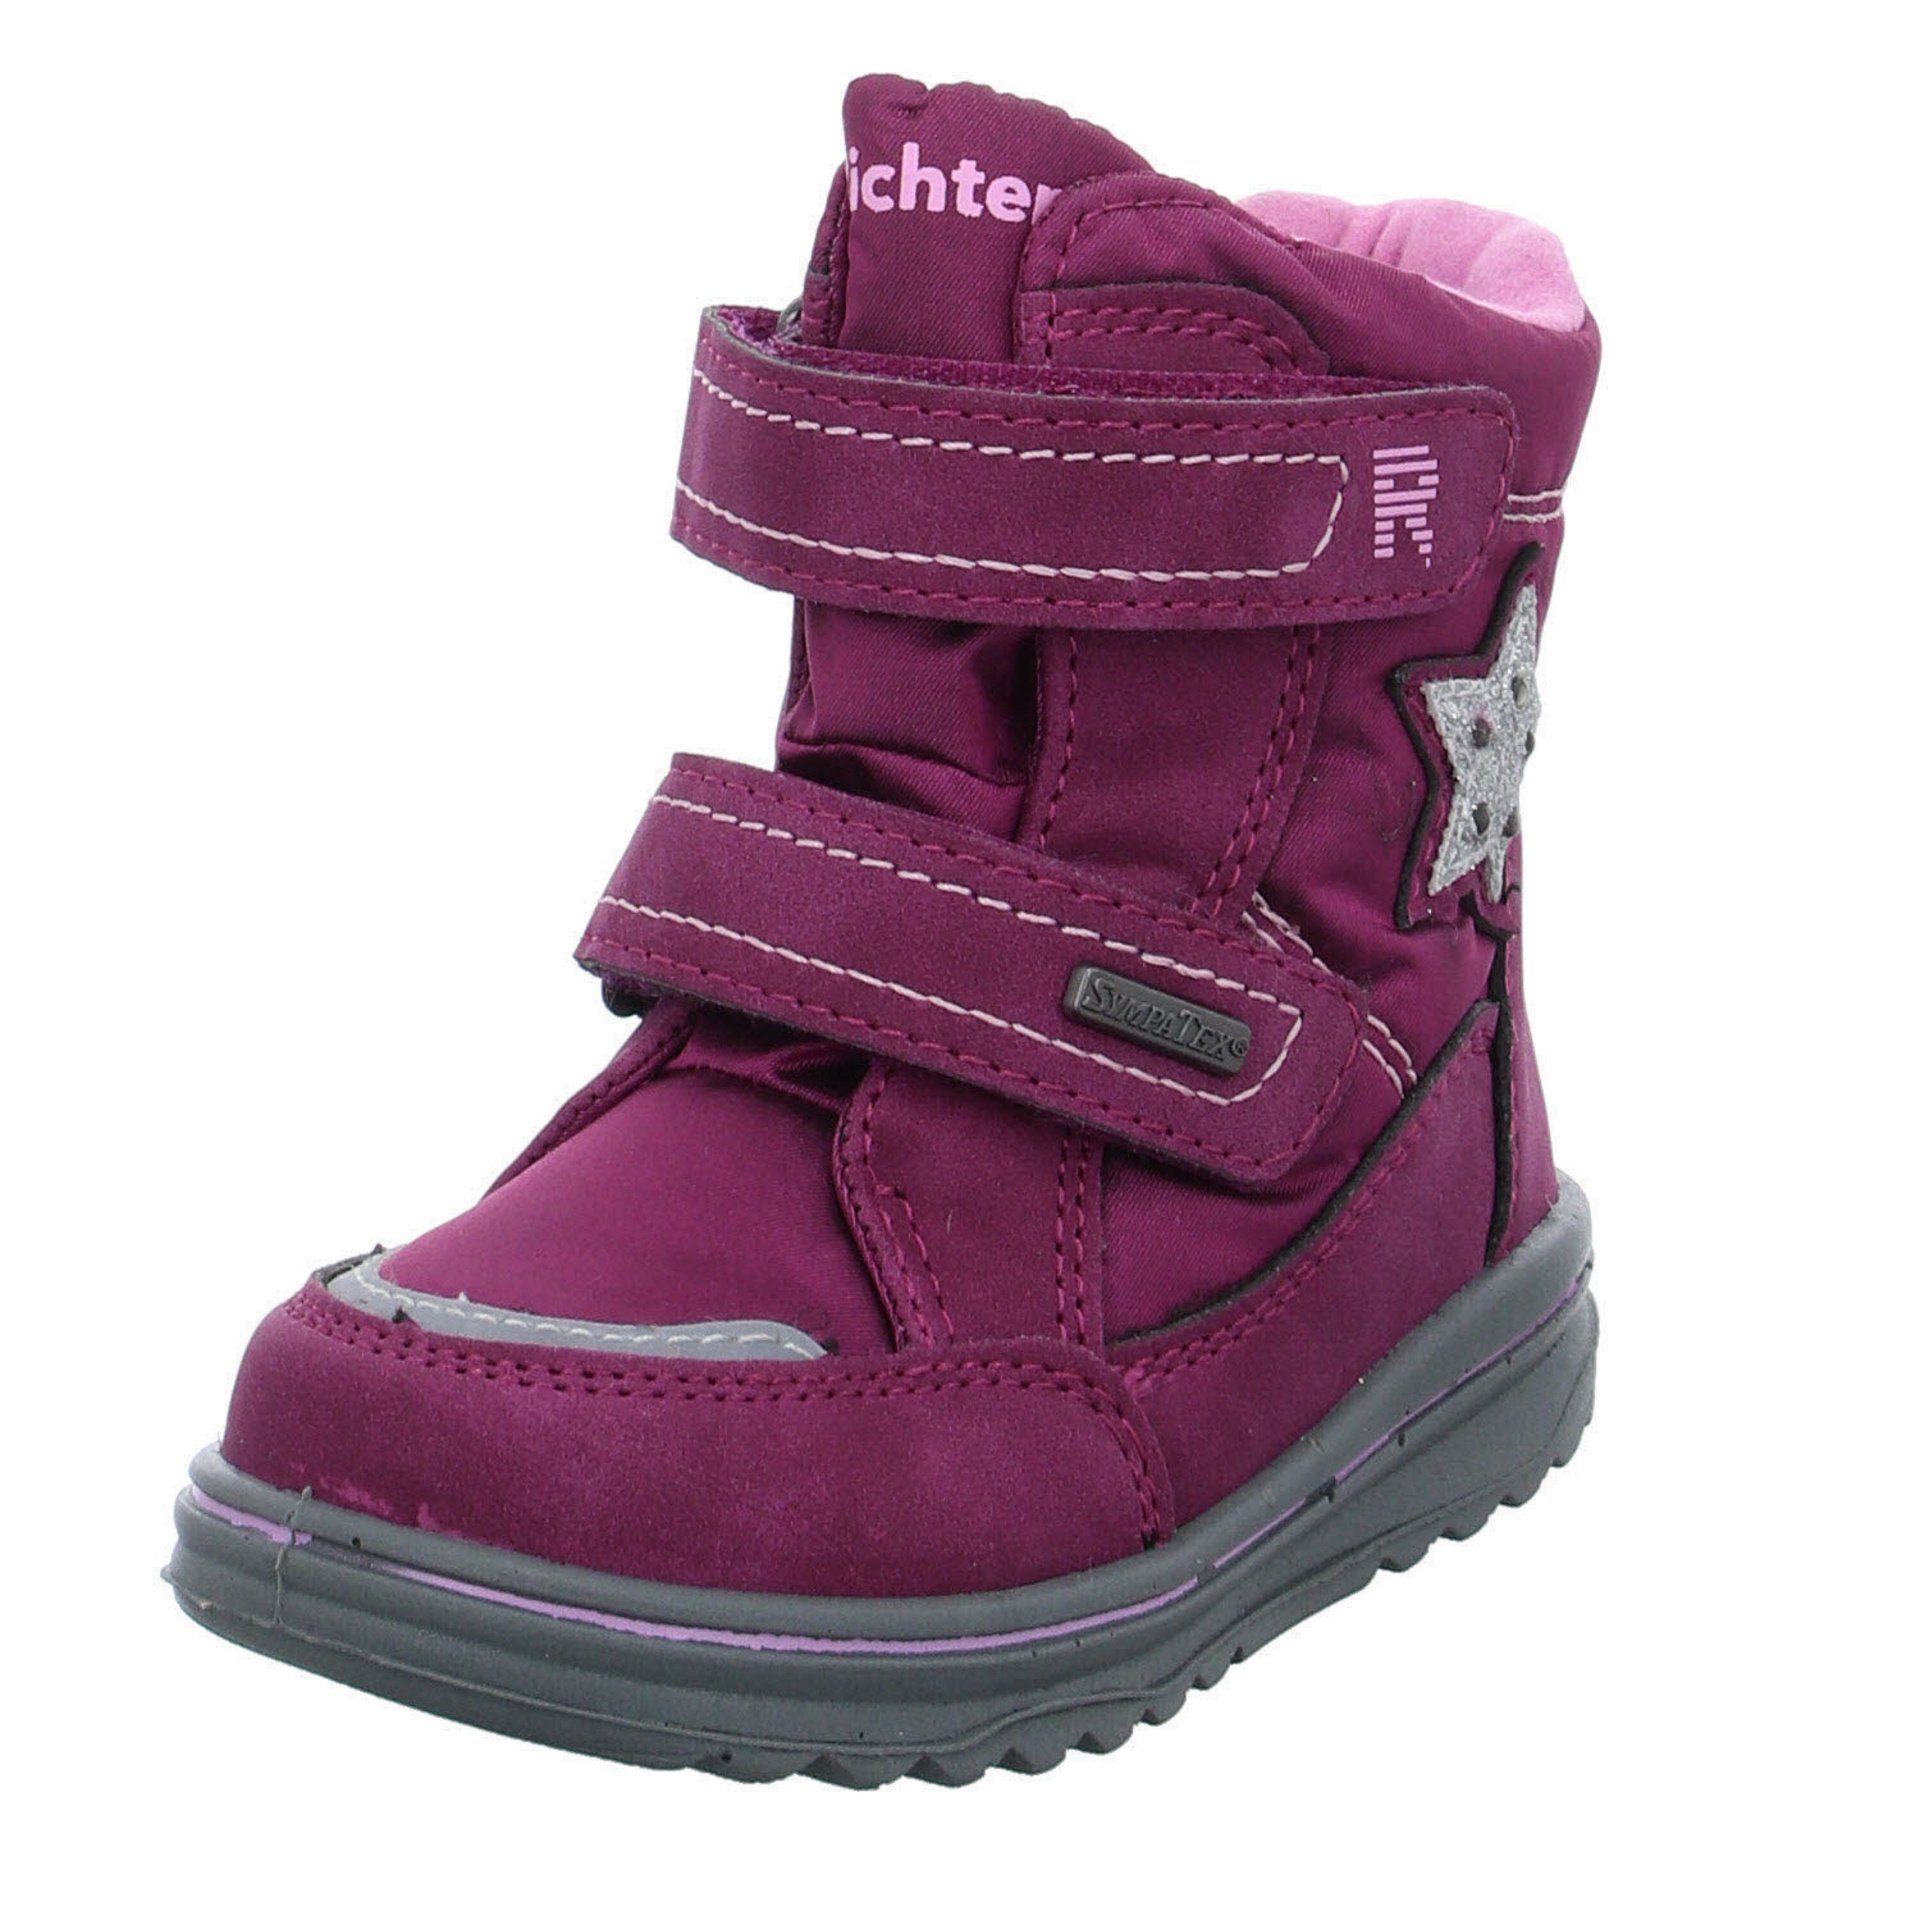 Richter »Mädchen Stiefel Schuhe Boots Kinderschuhe Aufnäher« Stiefel Leder-/Textilkombination  online kaufen | OTTO